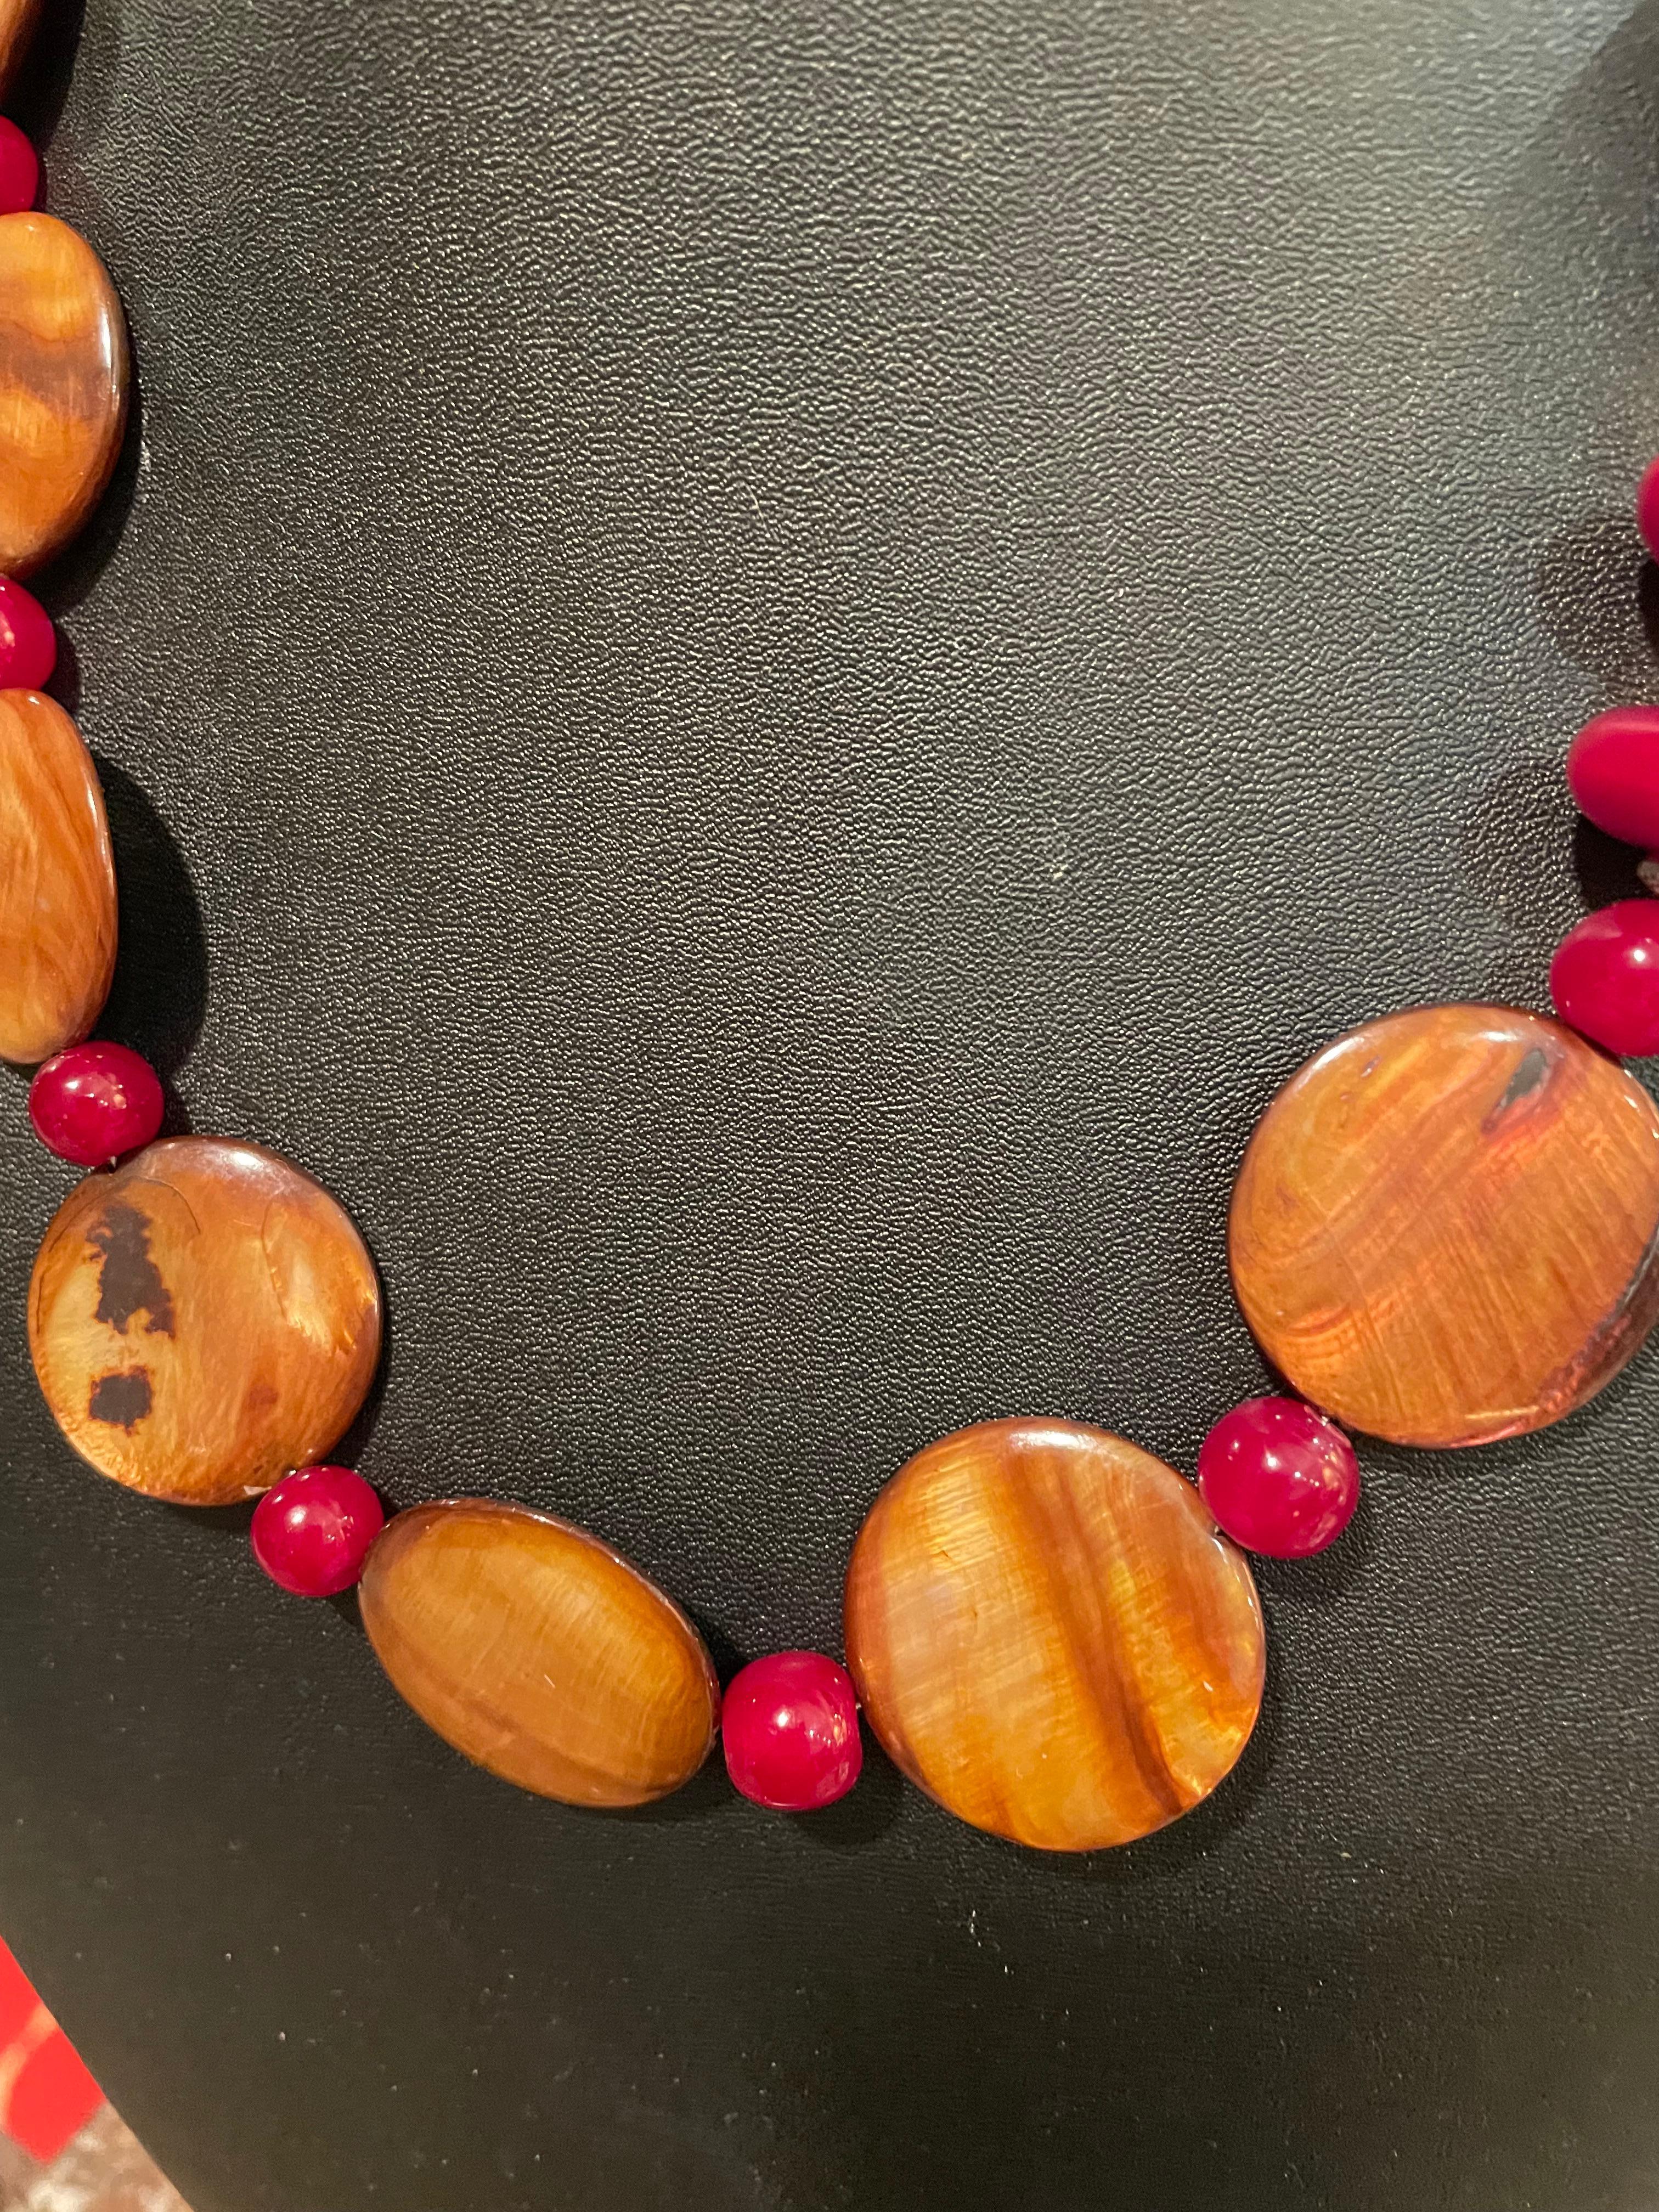 Lorrain's Bijoux propose un collier en résine indienne et coquillages, fait à la main et unique en son genre. Les couleurs de la résine bordeaux et de la coquille dorée sont riches et flatteuses pour tous les teints. Cette pièce est merveilleusement